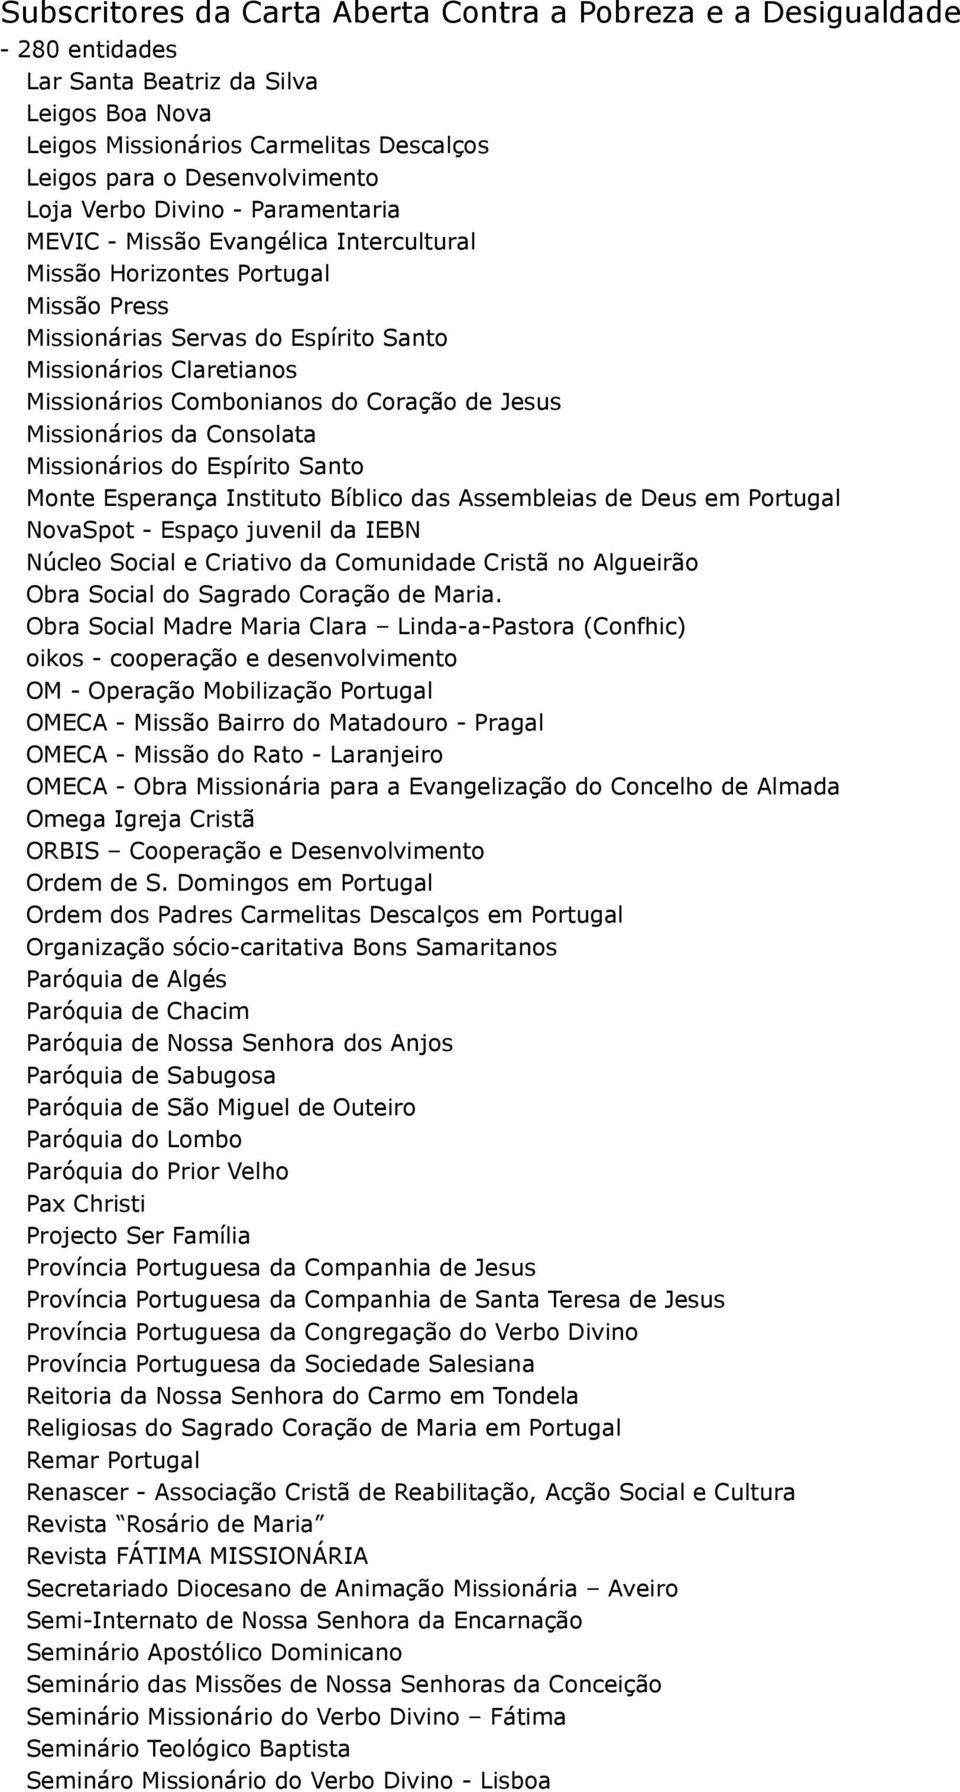 Monte Esperança Instituto Bíblico das Assembleias de Deus em Portugal NovaSpot - Espaço juvenil da IEBN Núcleo Social e Criativo da Comunidade Cristã no Algueirão Obra Social do Sagrado Coração de